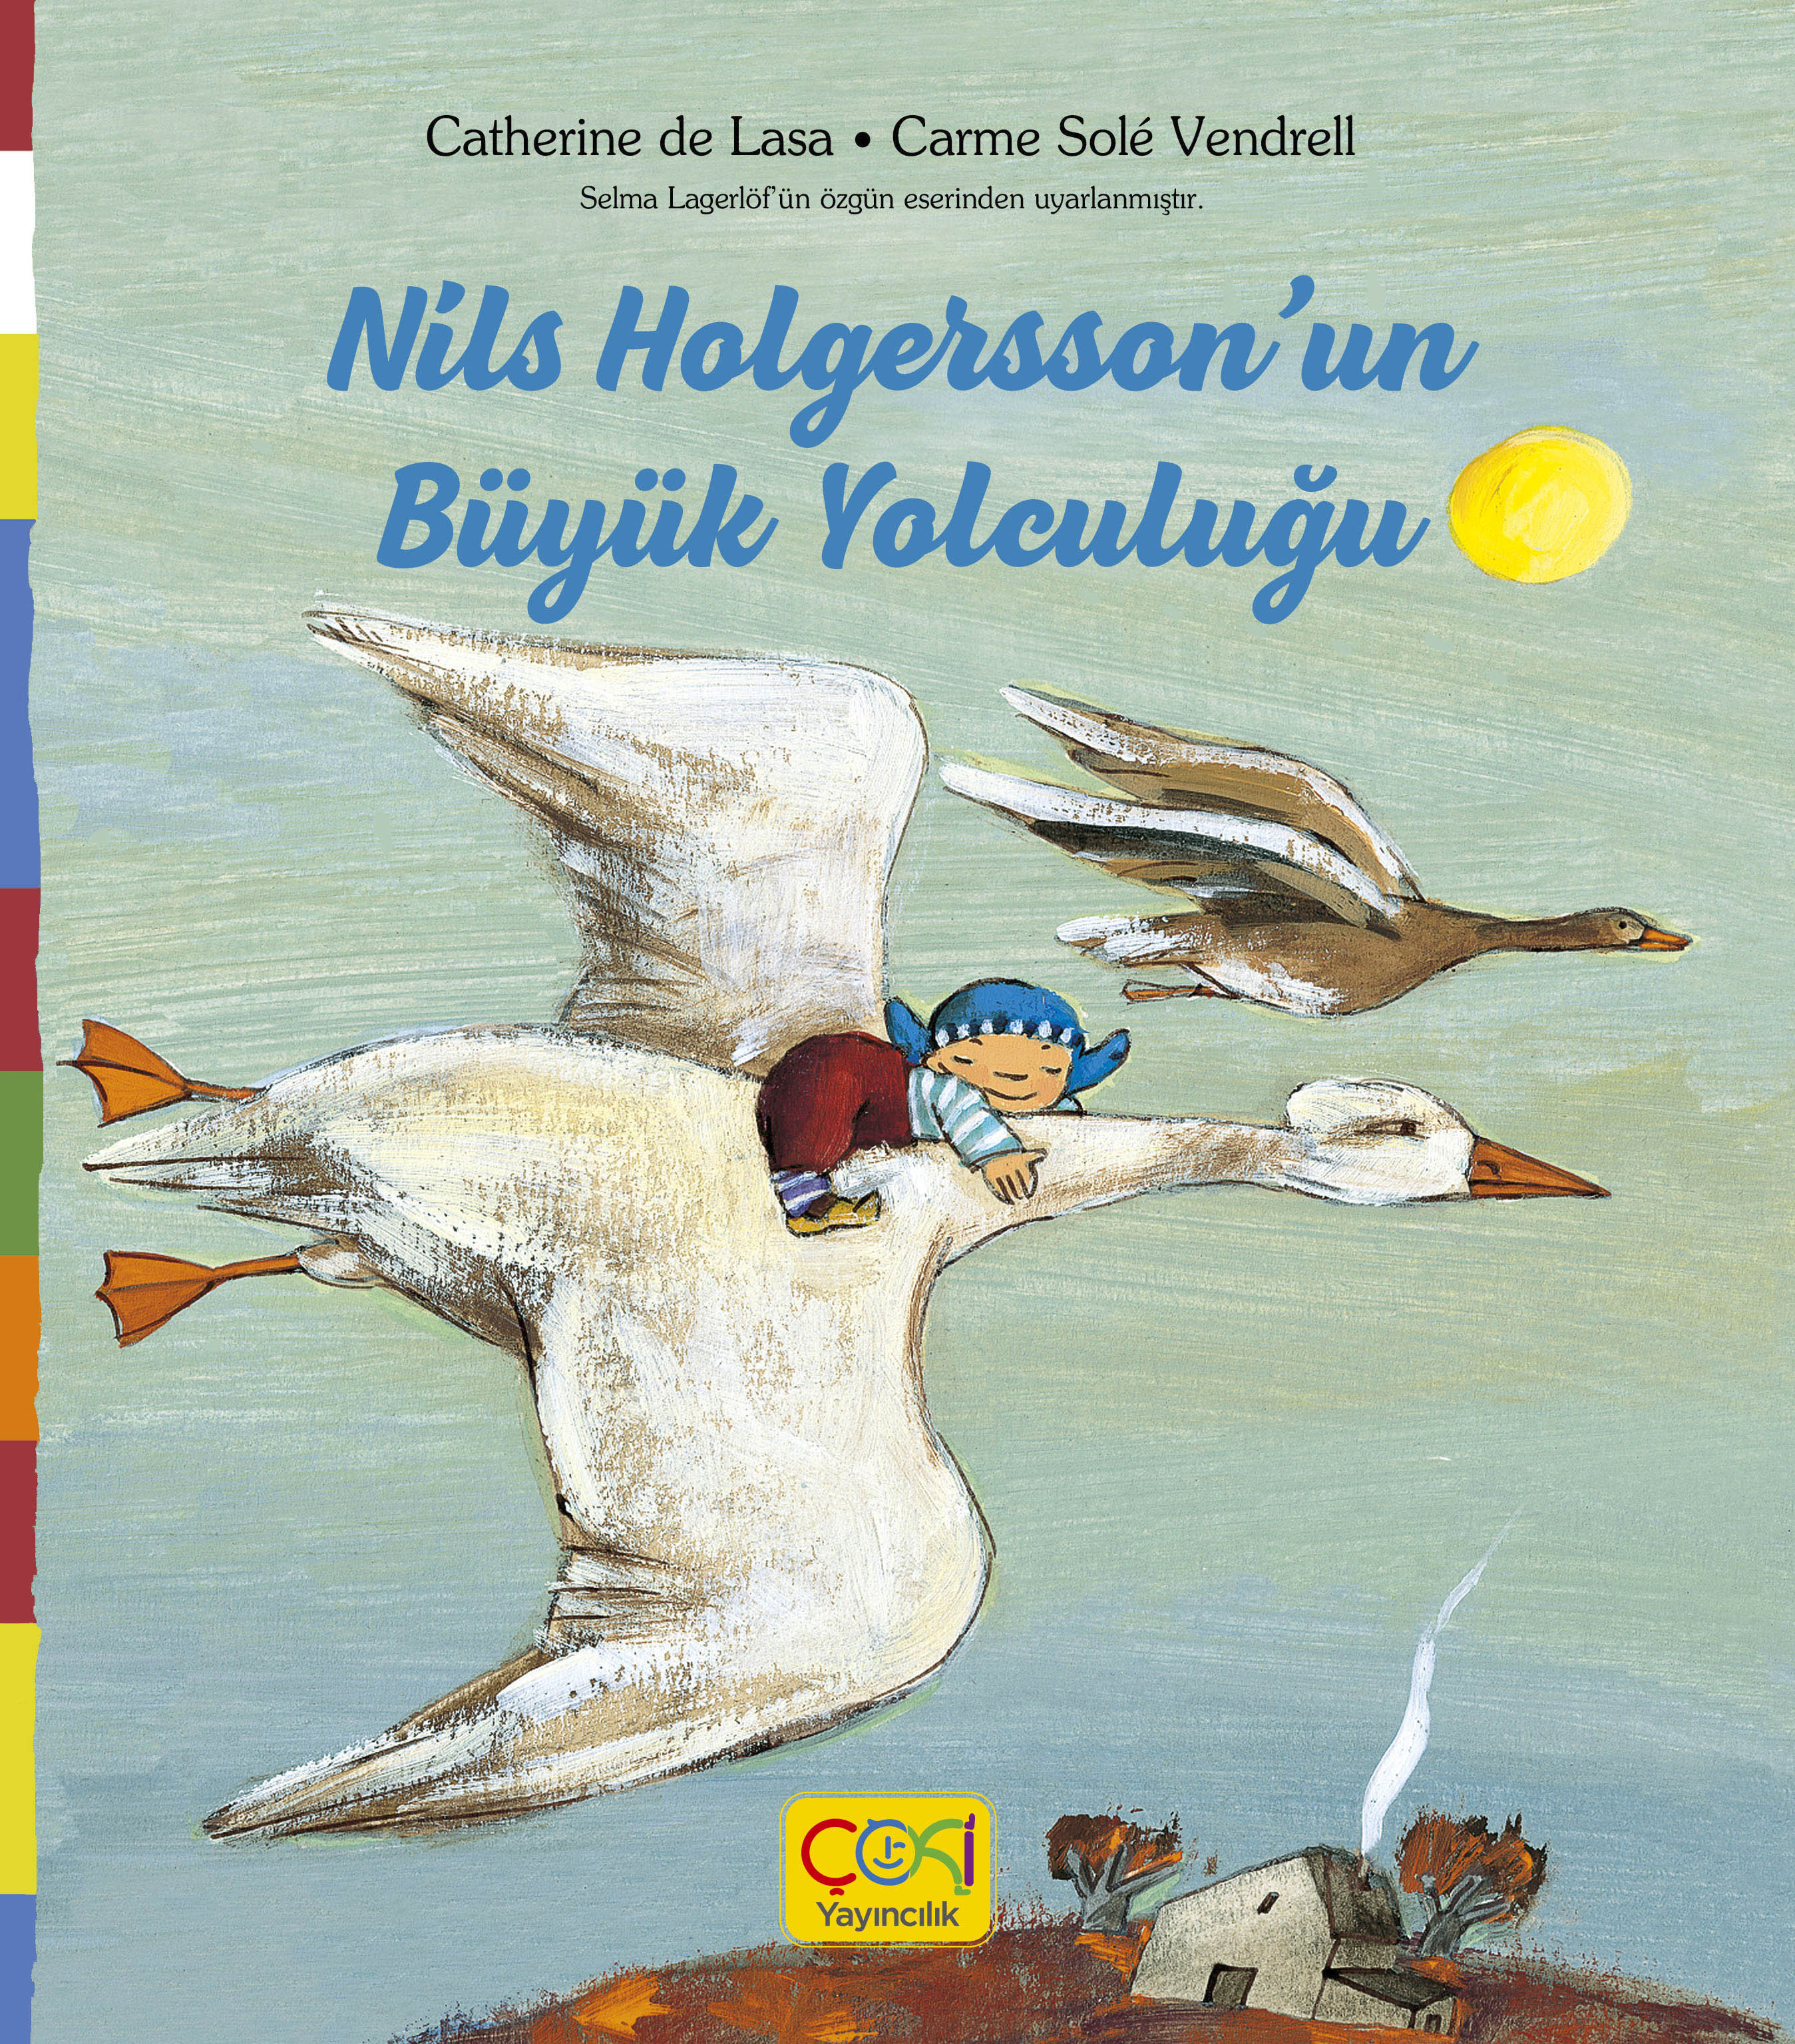 EN GÜZEL MASALLAR DİZİSİ - Nils Holgersson'un Büyük Yolculuğu